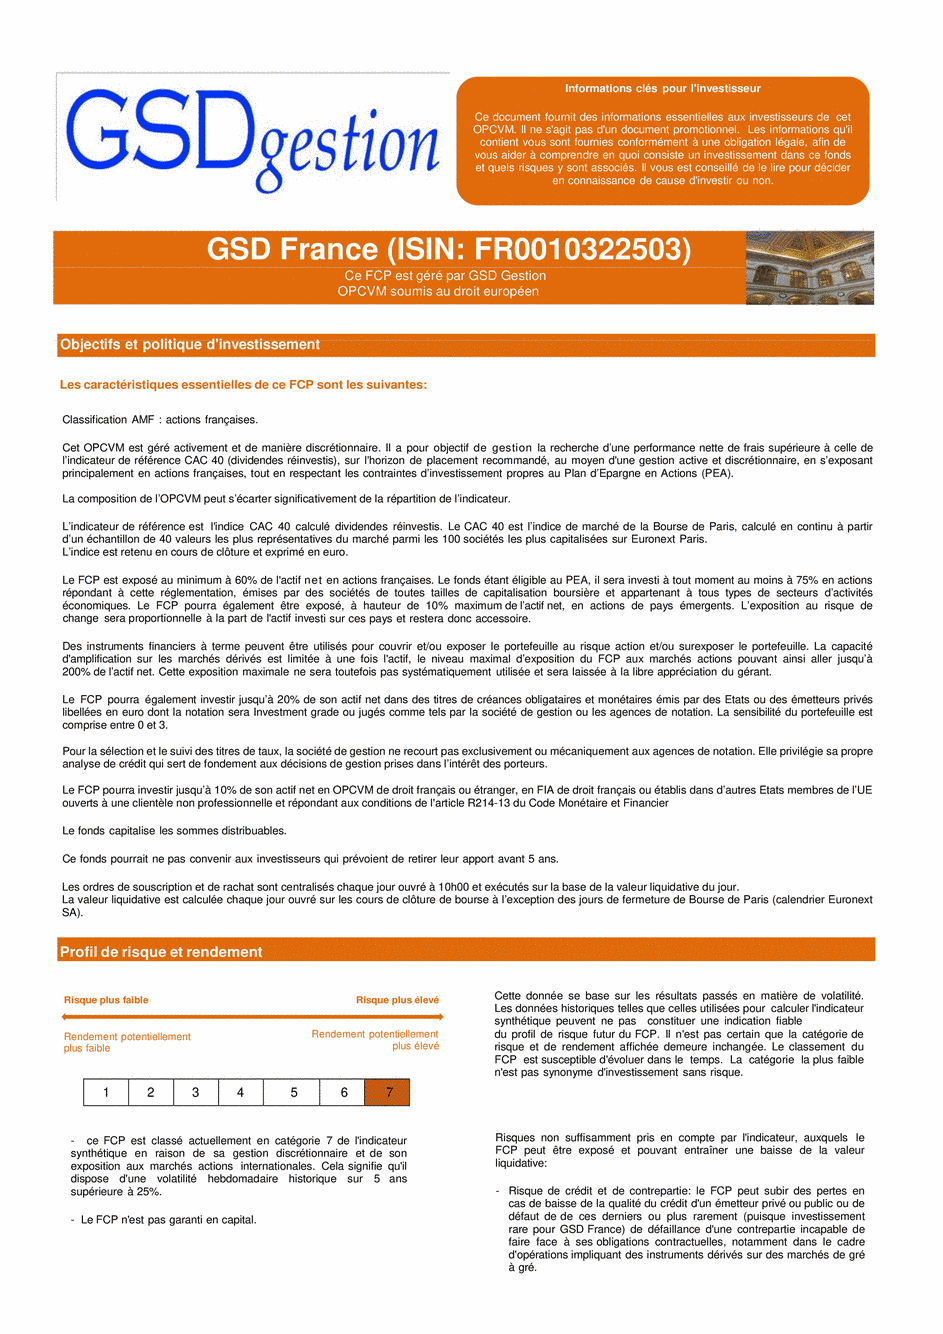 DICI-Prospectus Complet GSD France - 12/01/2022 - Français